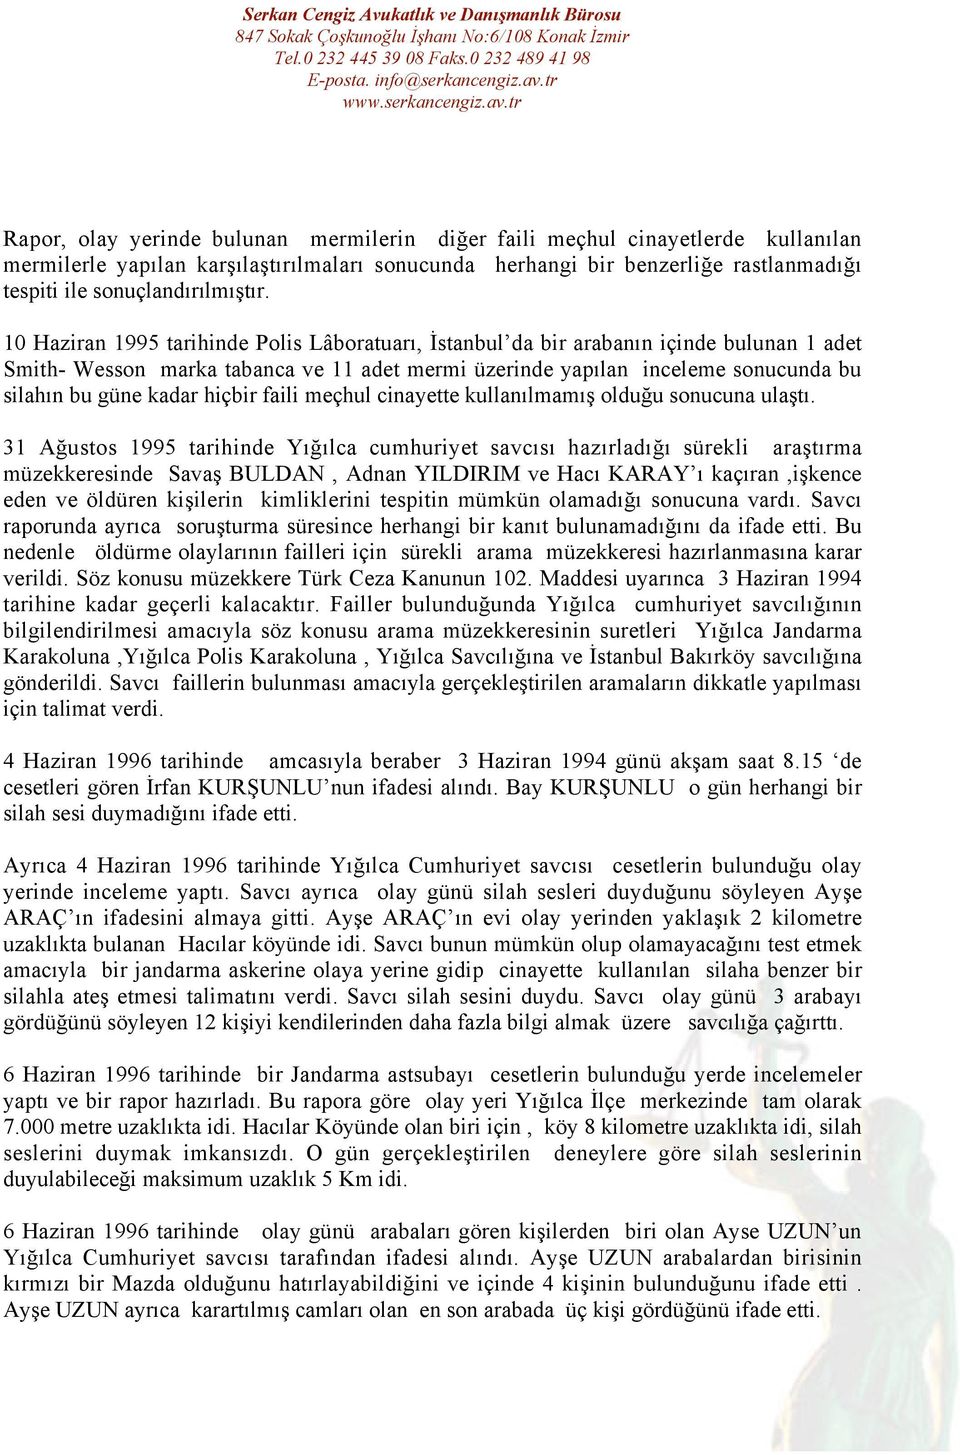 10 Haziran 1995 tarihinde Polis Lâboratuarı, İstanbul da bir arabanın içinde bulunan 1 adet Smith- Wesson marka tabanca ve 11 adet mermi üzerinde yapılan inceleme sonucunda bu silahın bu güne kadar